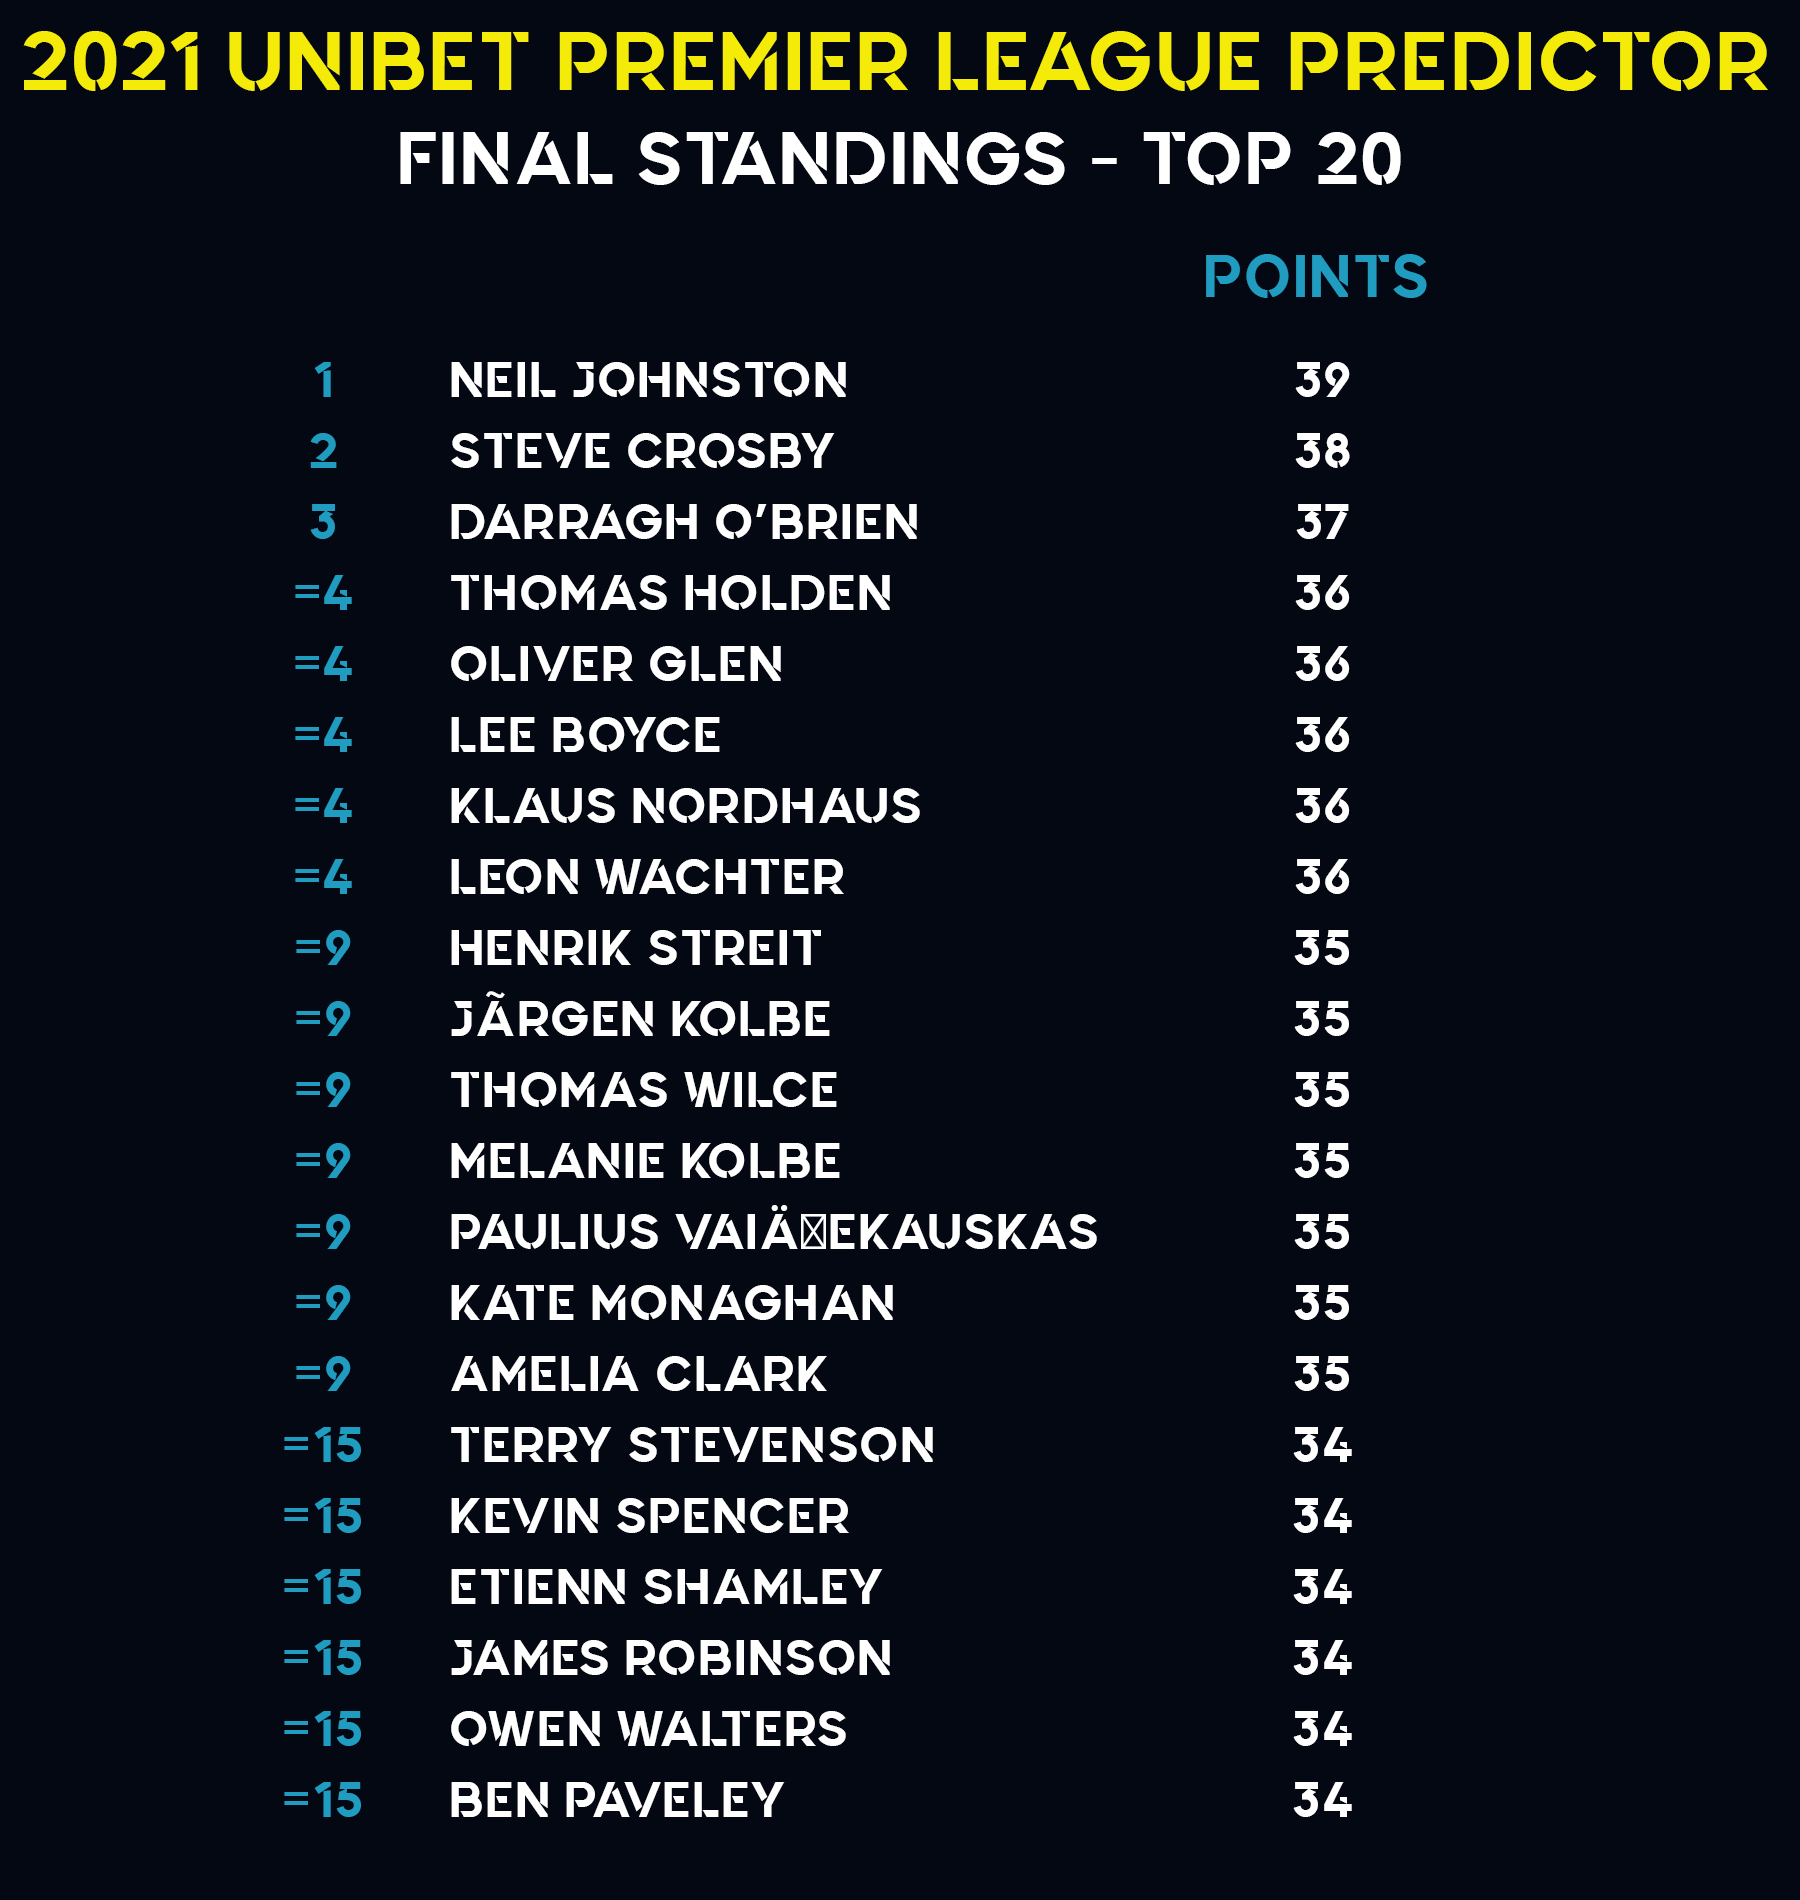 Premier League Predictor Top 20